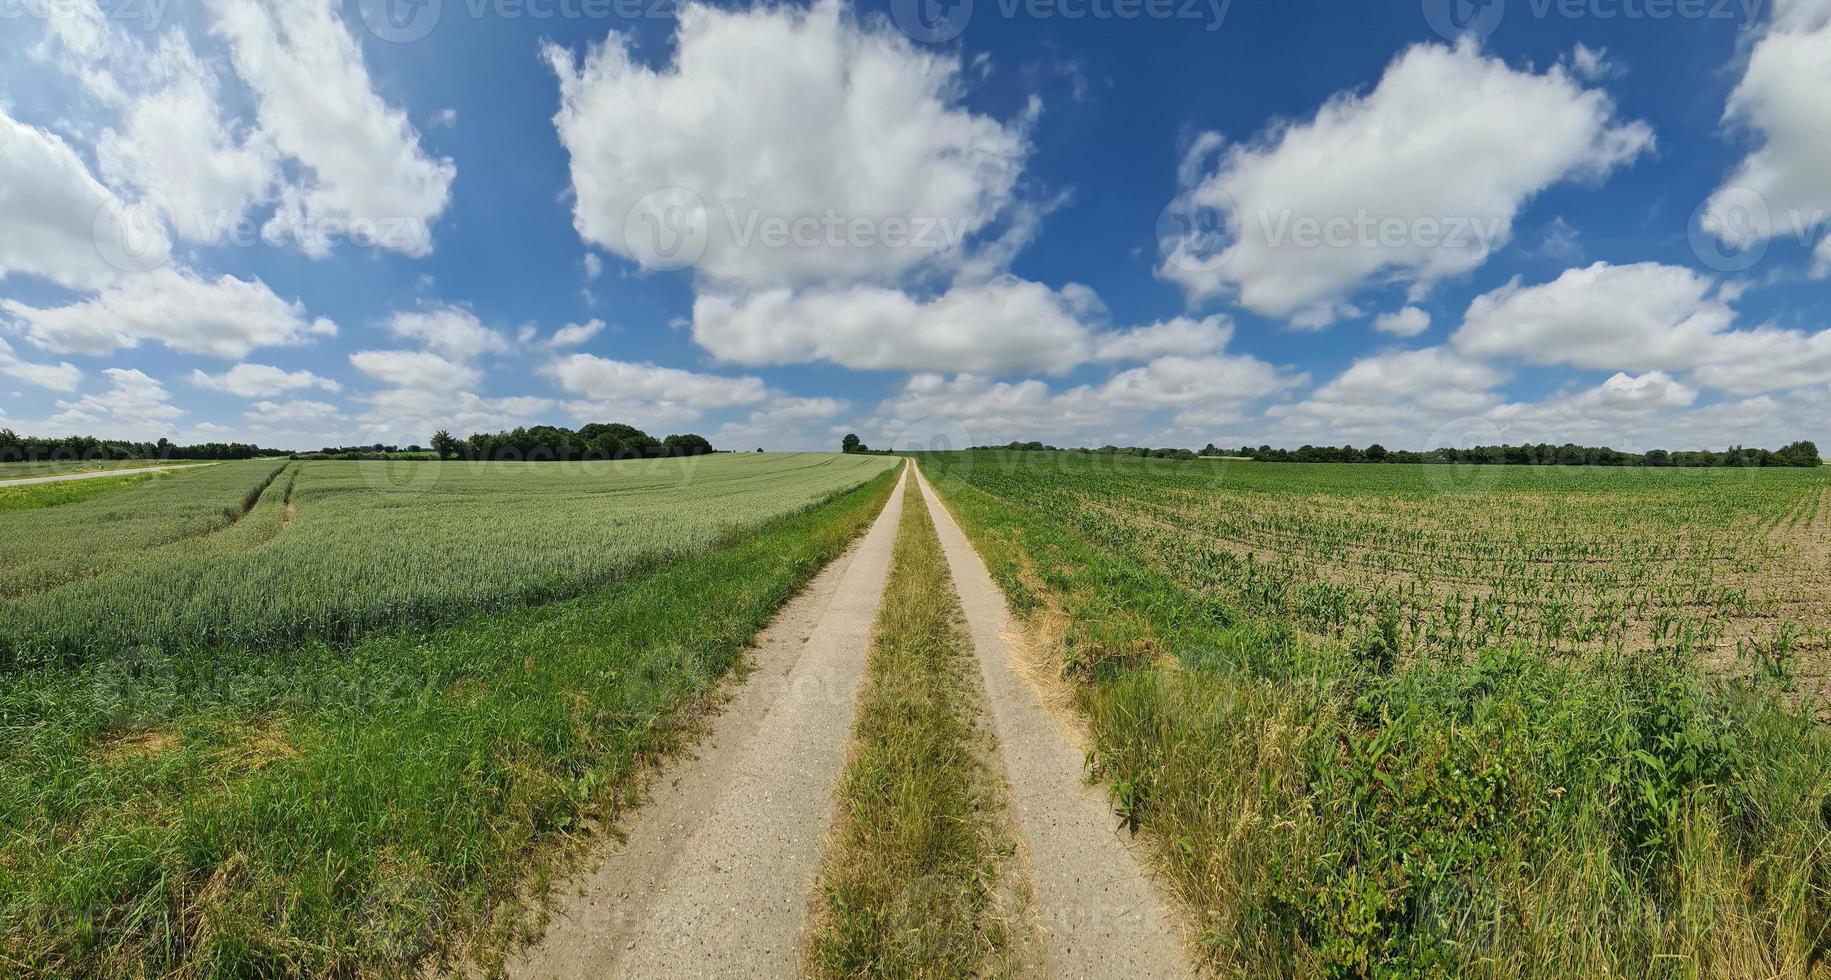 belo panorama de alta resolução de uma paisagem de país do norte da Europa com campos e grama verde foto